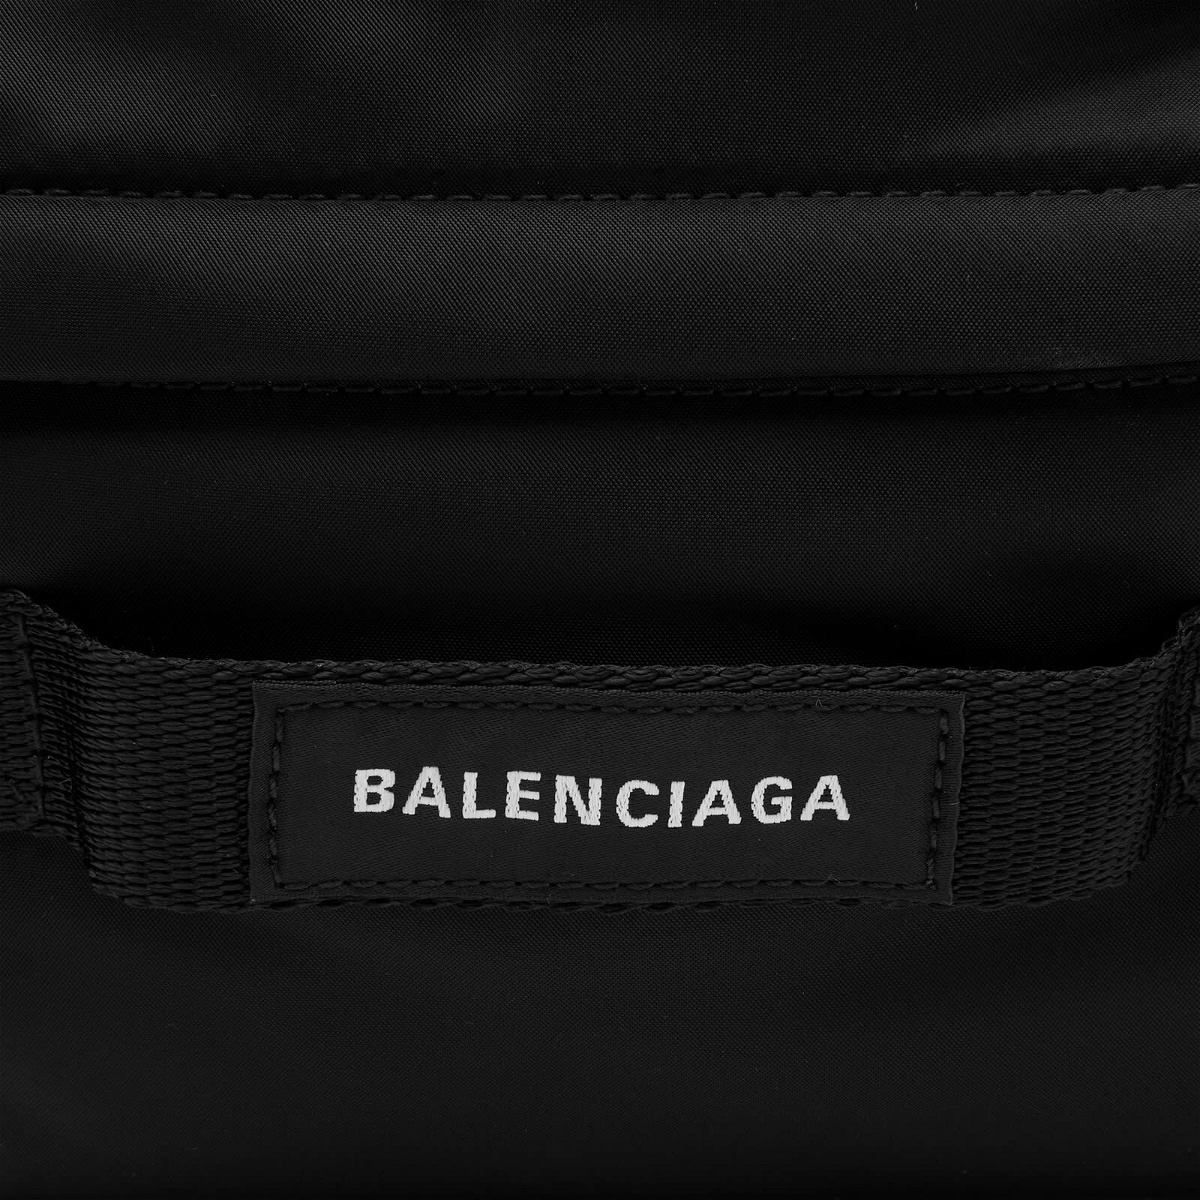 Balenciaga Men's Army Large Belt Bag in Black Balenciaga